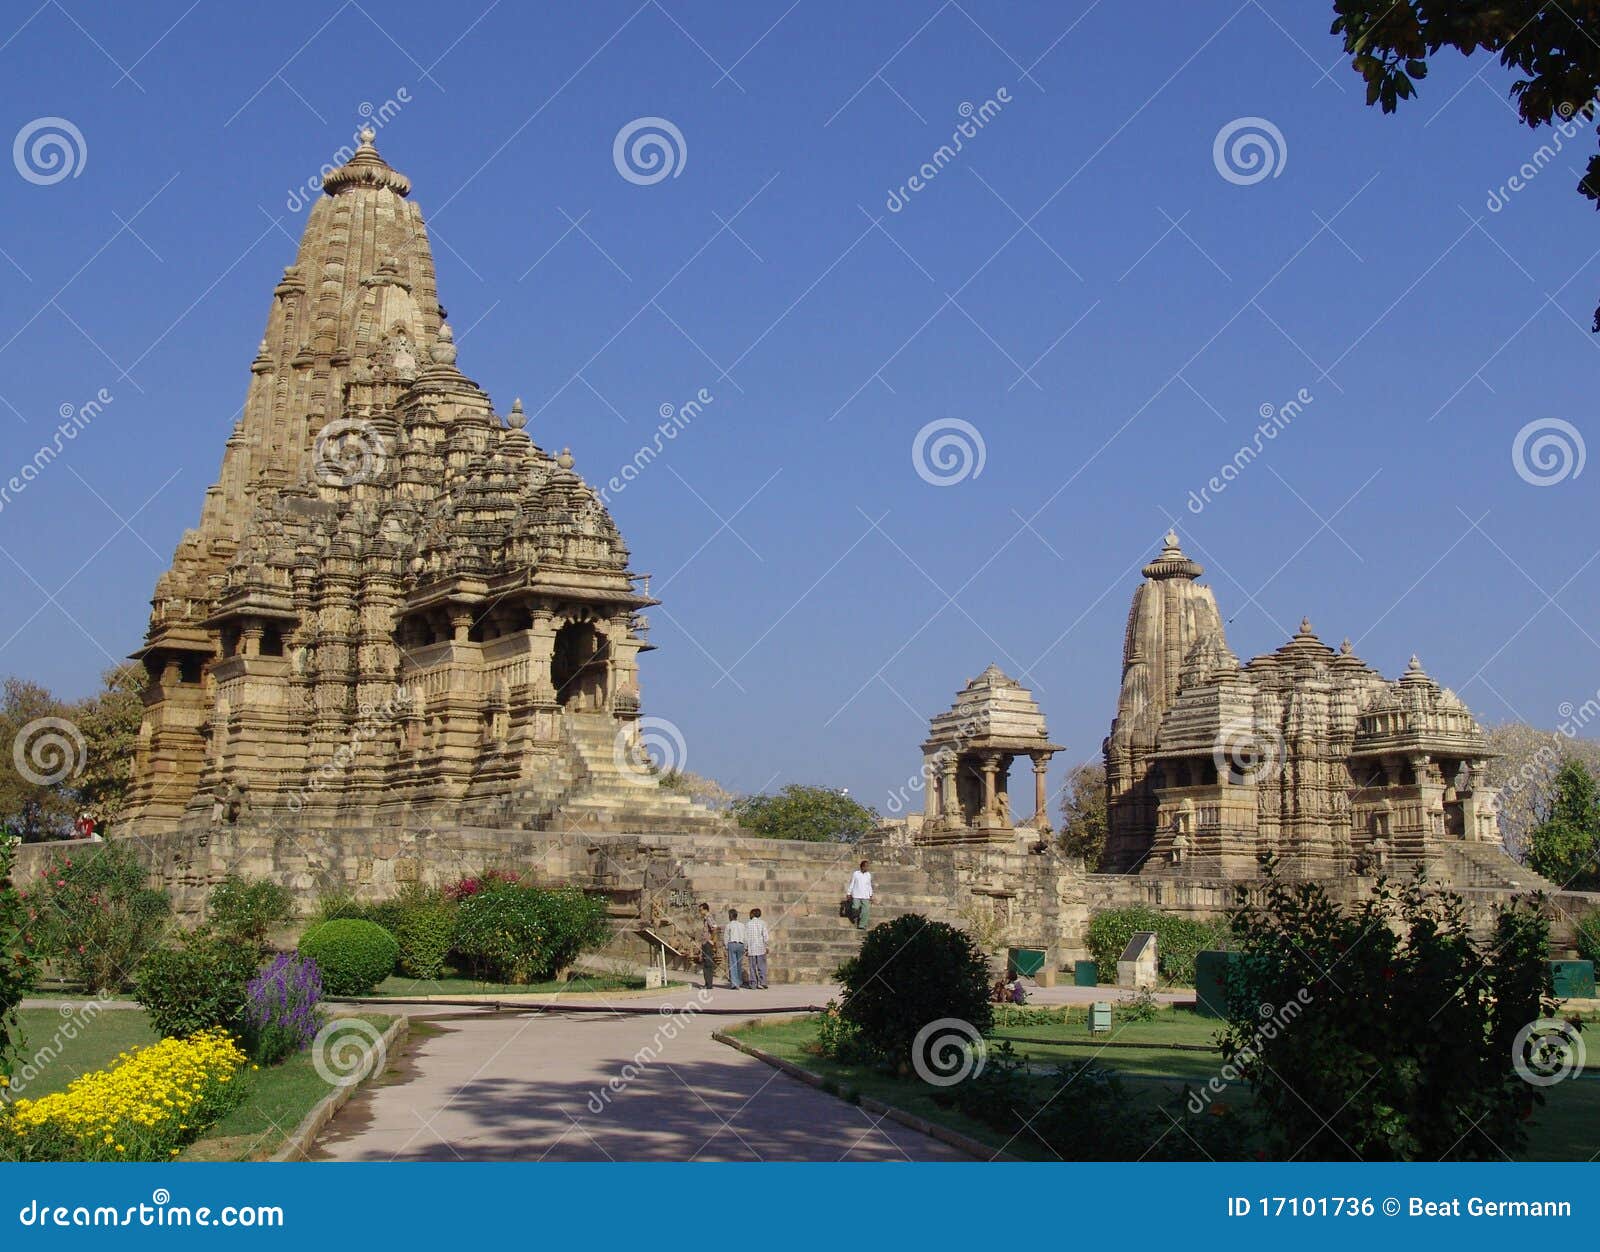 temples at khajuraho, india